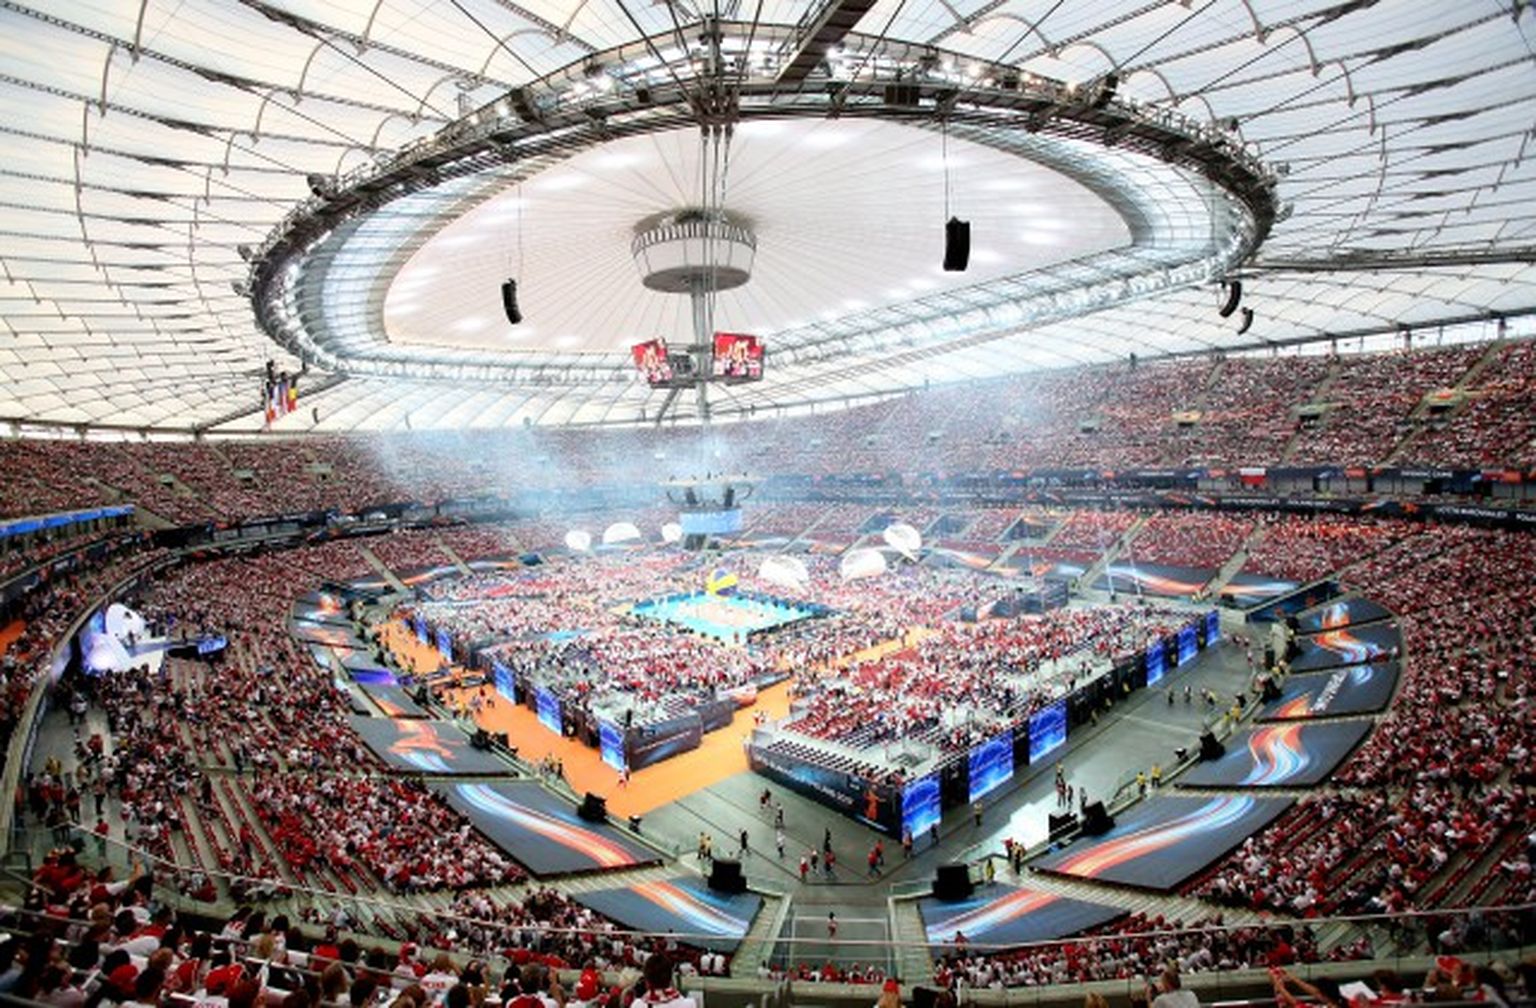 Nacionālais stadions Polijas galvaspilsētā Varšavā. Eiropas volejbola čempionātā sasniegts apmeklētības rekords - klātienē spēli vēro vairāk nekā 65 000 skatītāju